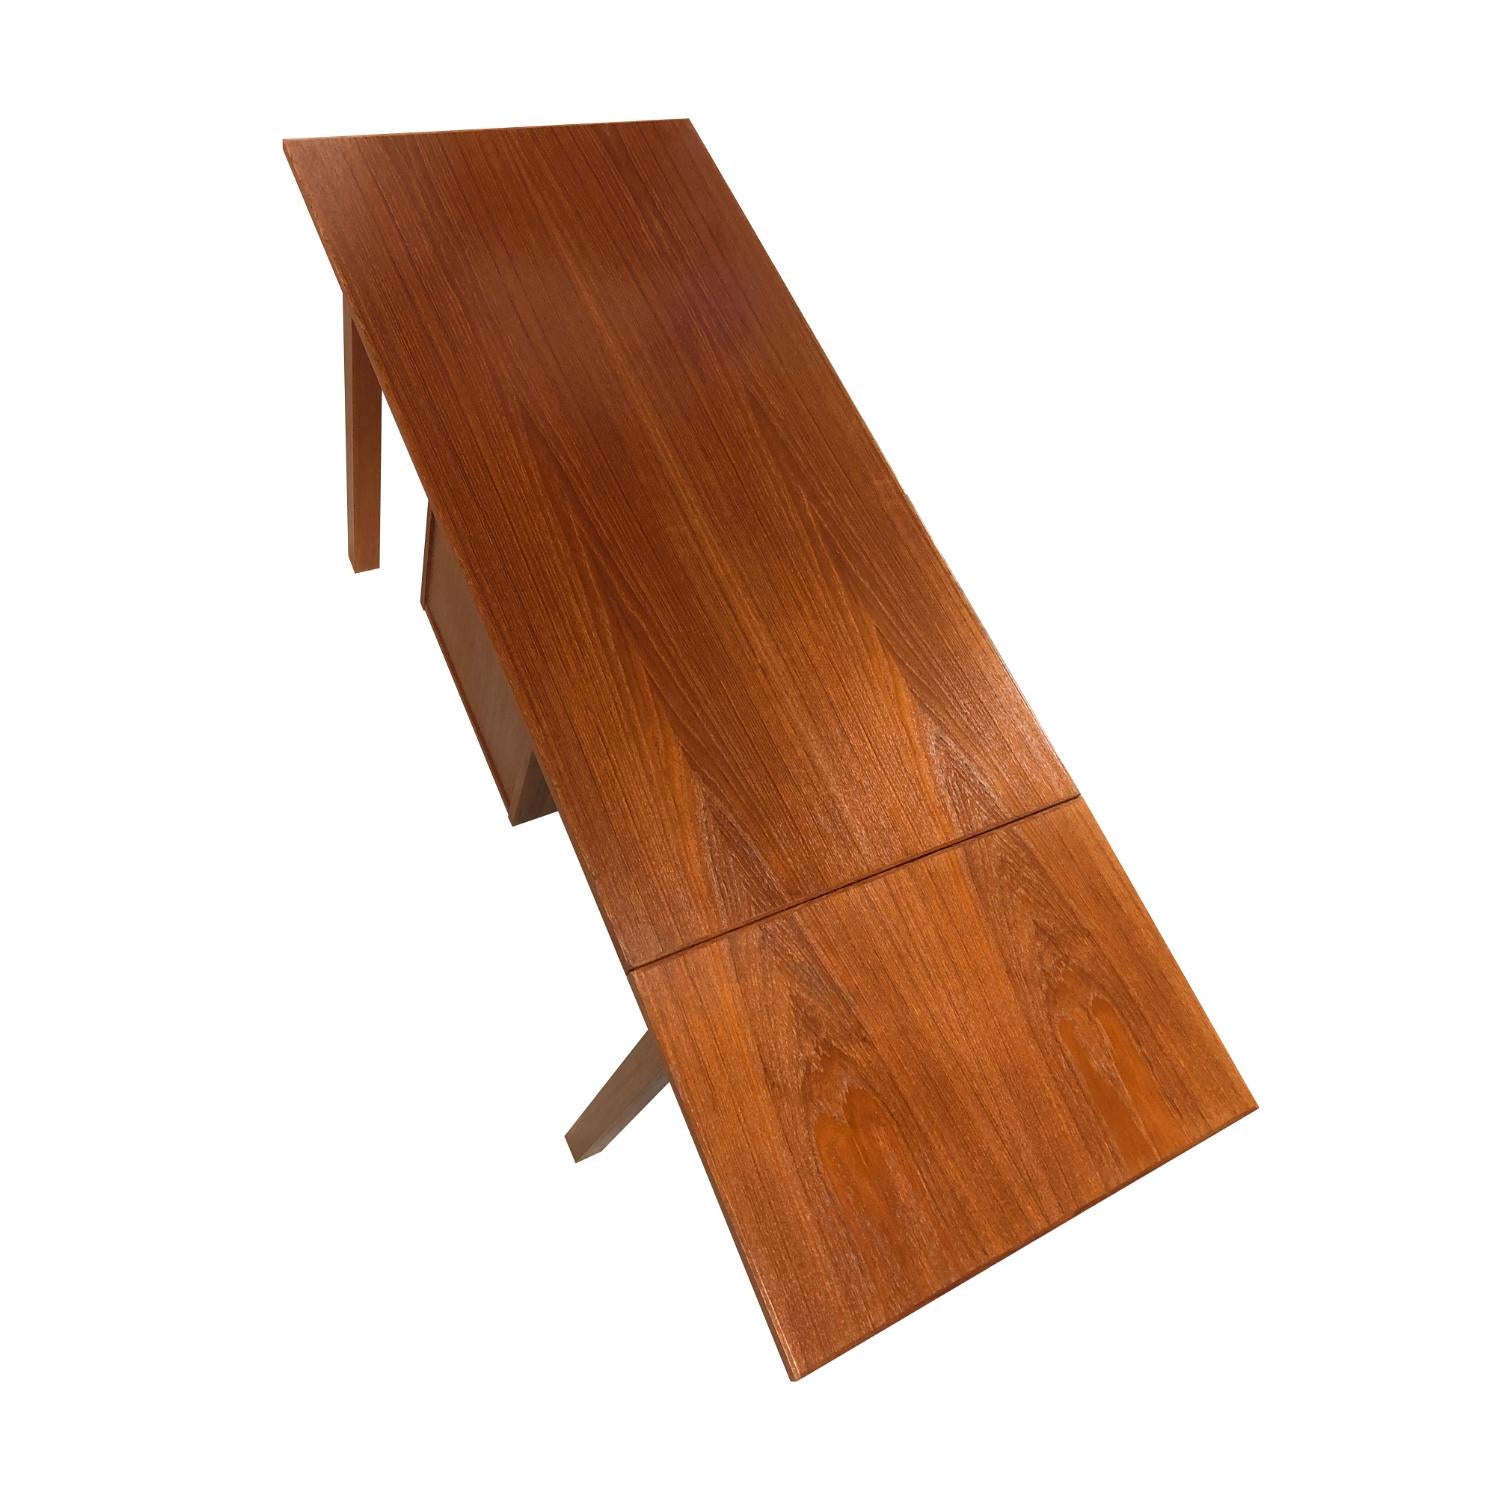 Mid-Century Modern Arne Vodder Style Danish Teak Desk with Sliding Drop-Leaf Top